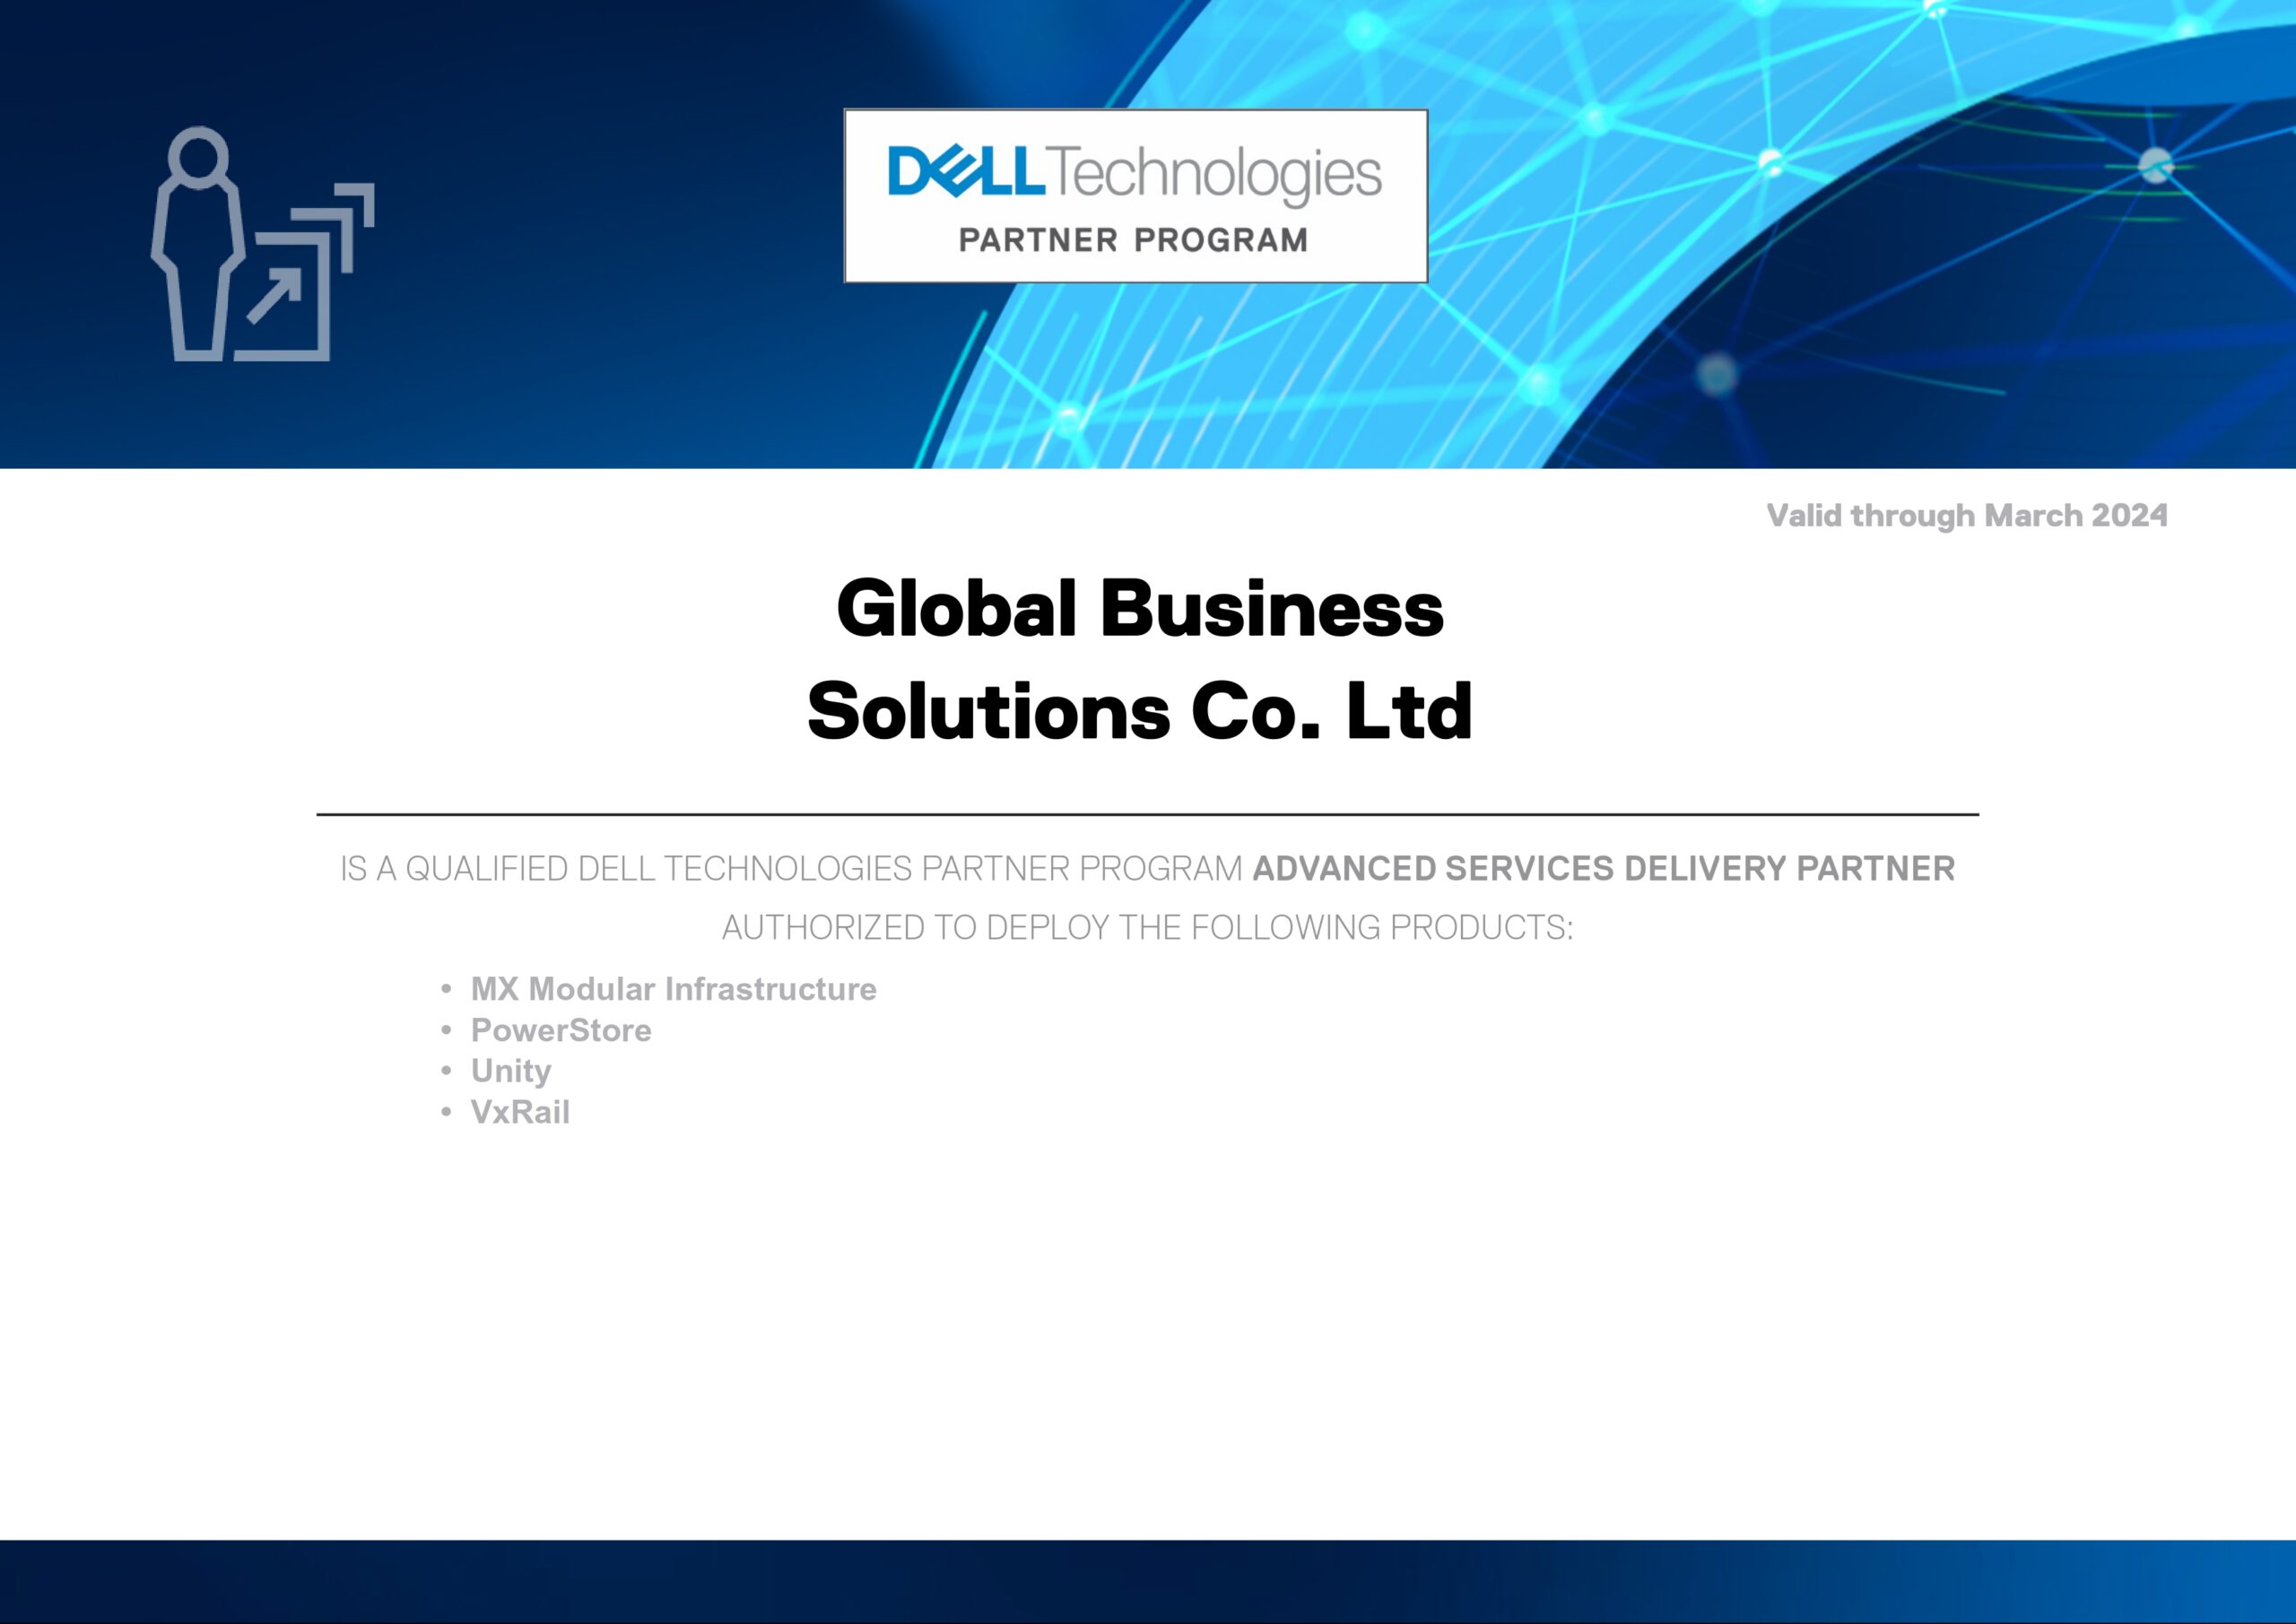 Dell_Technologies_Partner_Program_Certificate